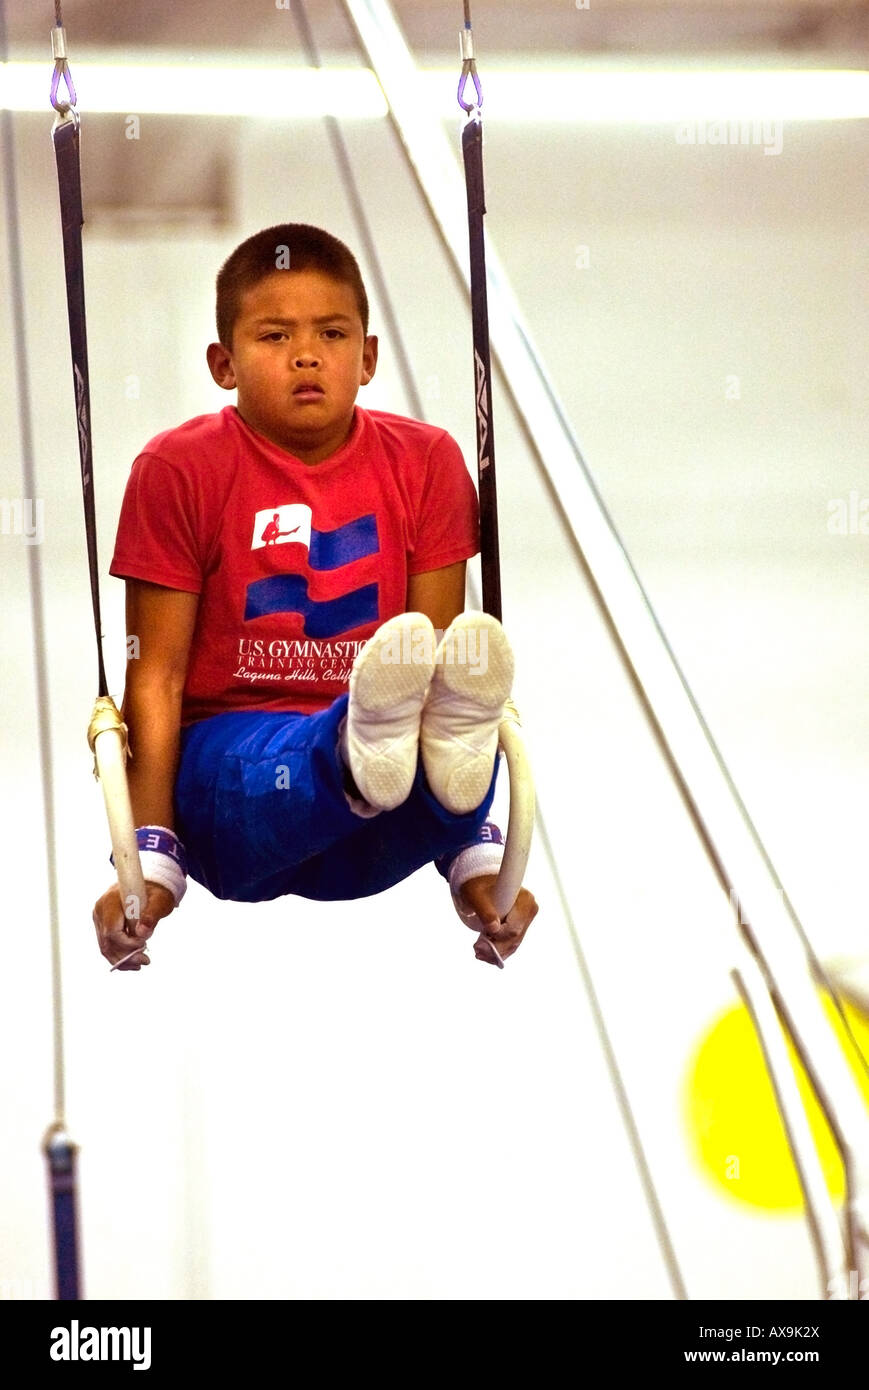 Boy fonctionne sur les anneaux de gymnastique au cours de la démonstration de répondre à U S Gymnastics Center California USA pas libéré Banque D'Images